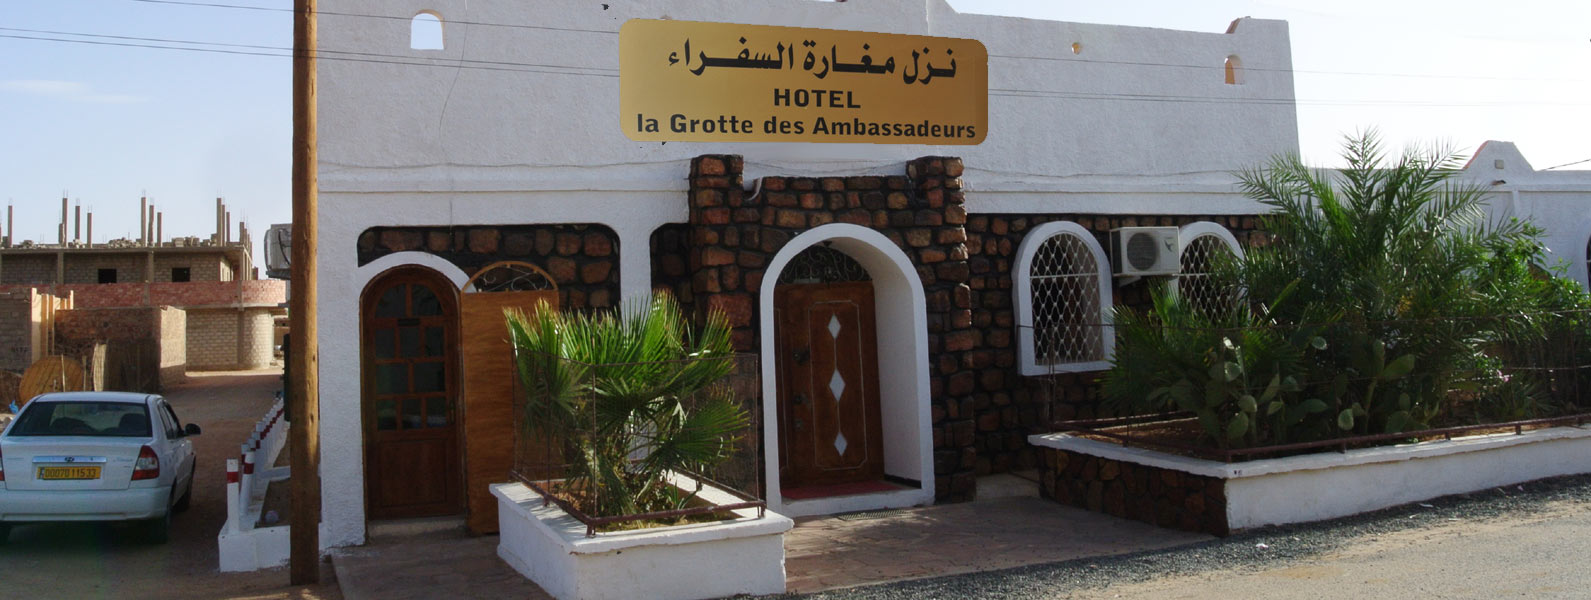 Hôtel Grotte des Ambassadeurs